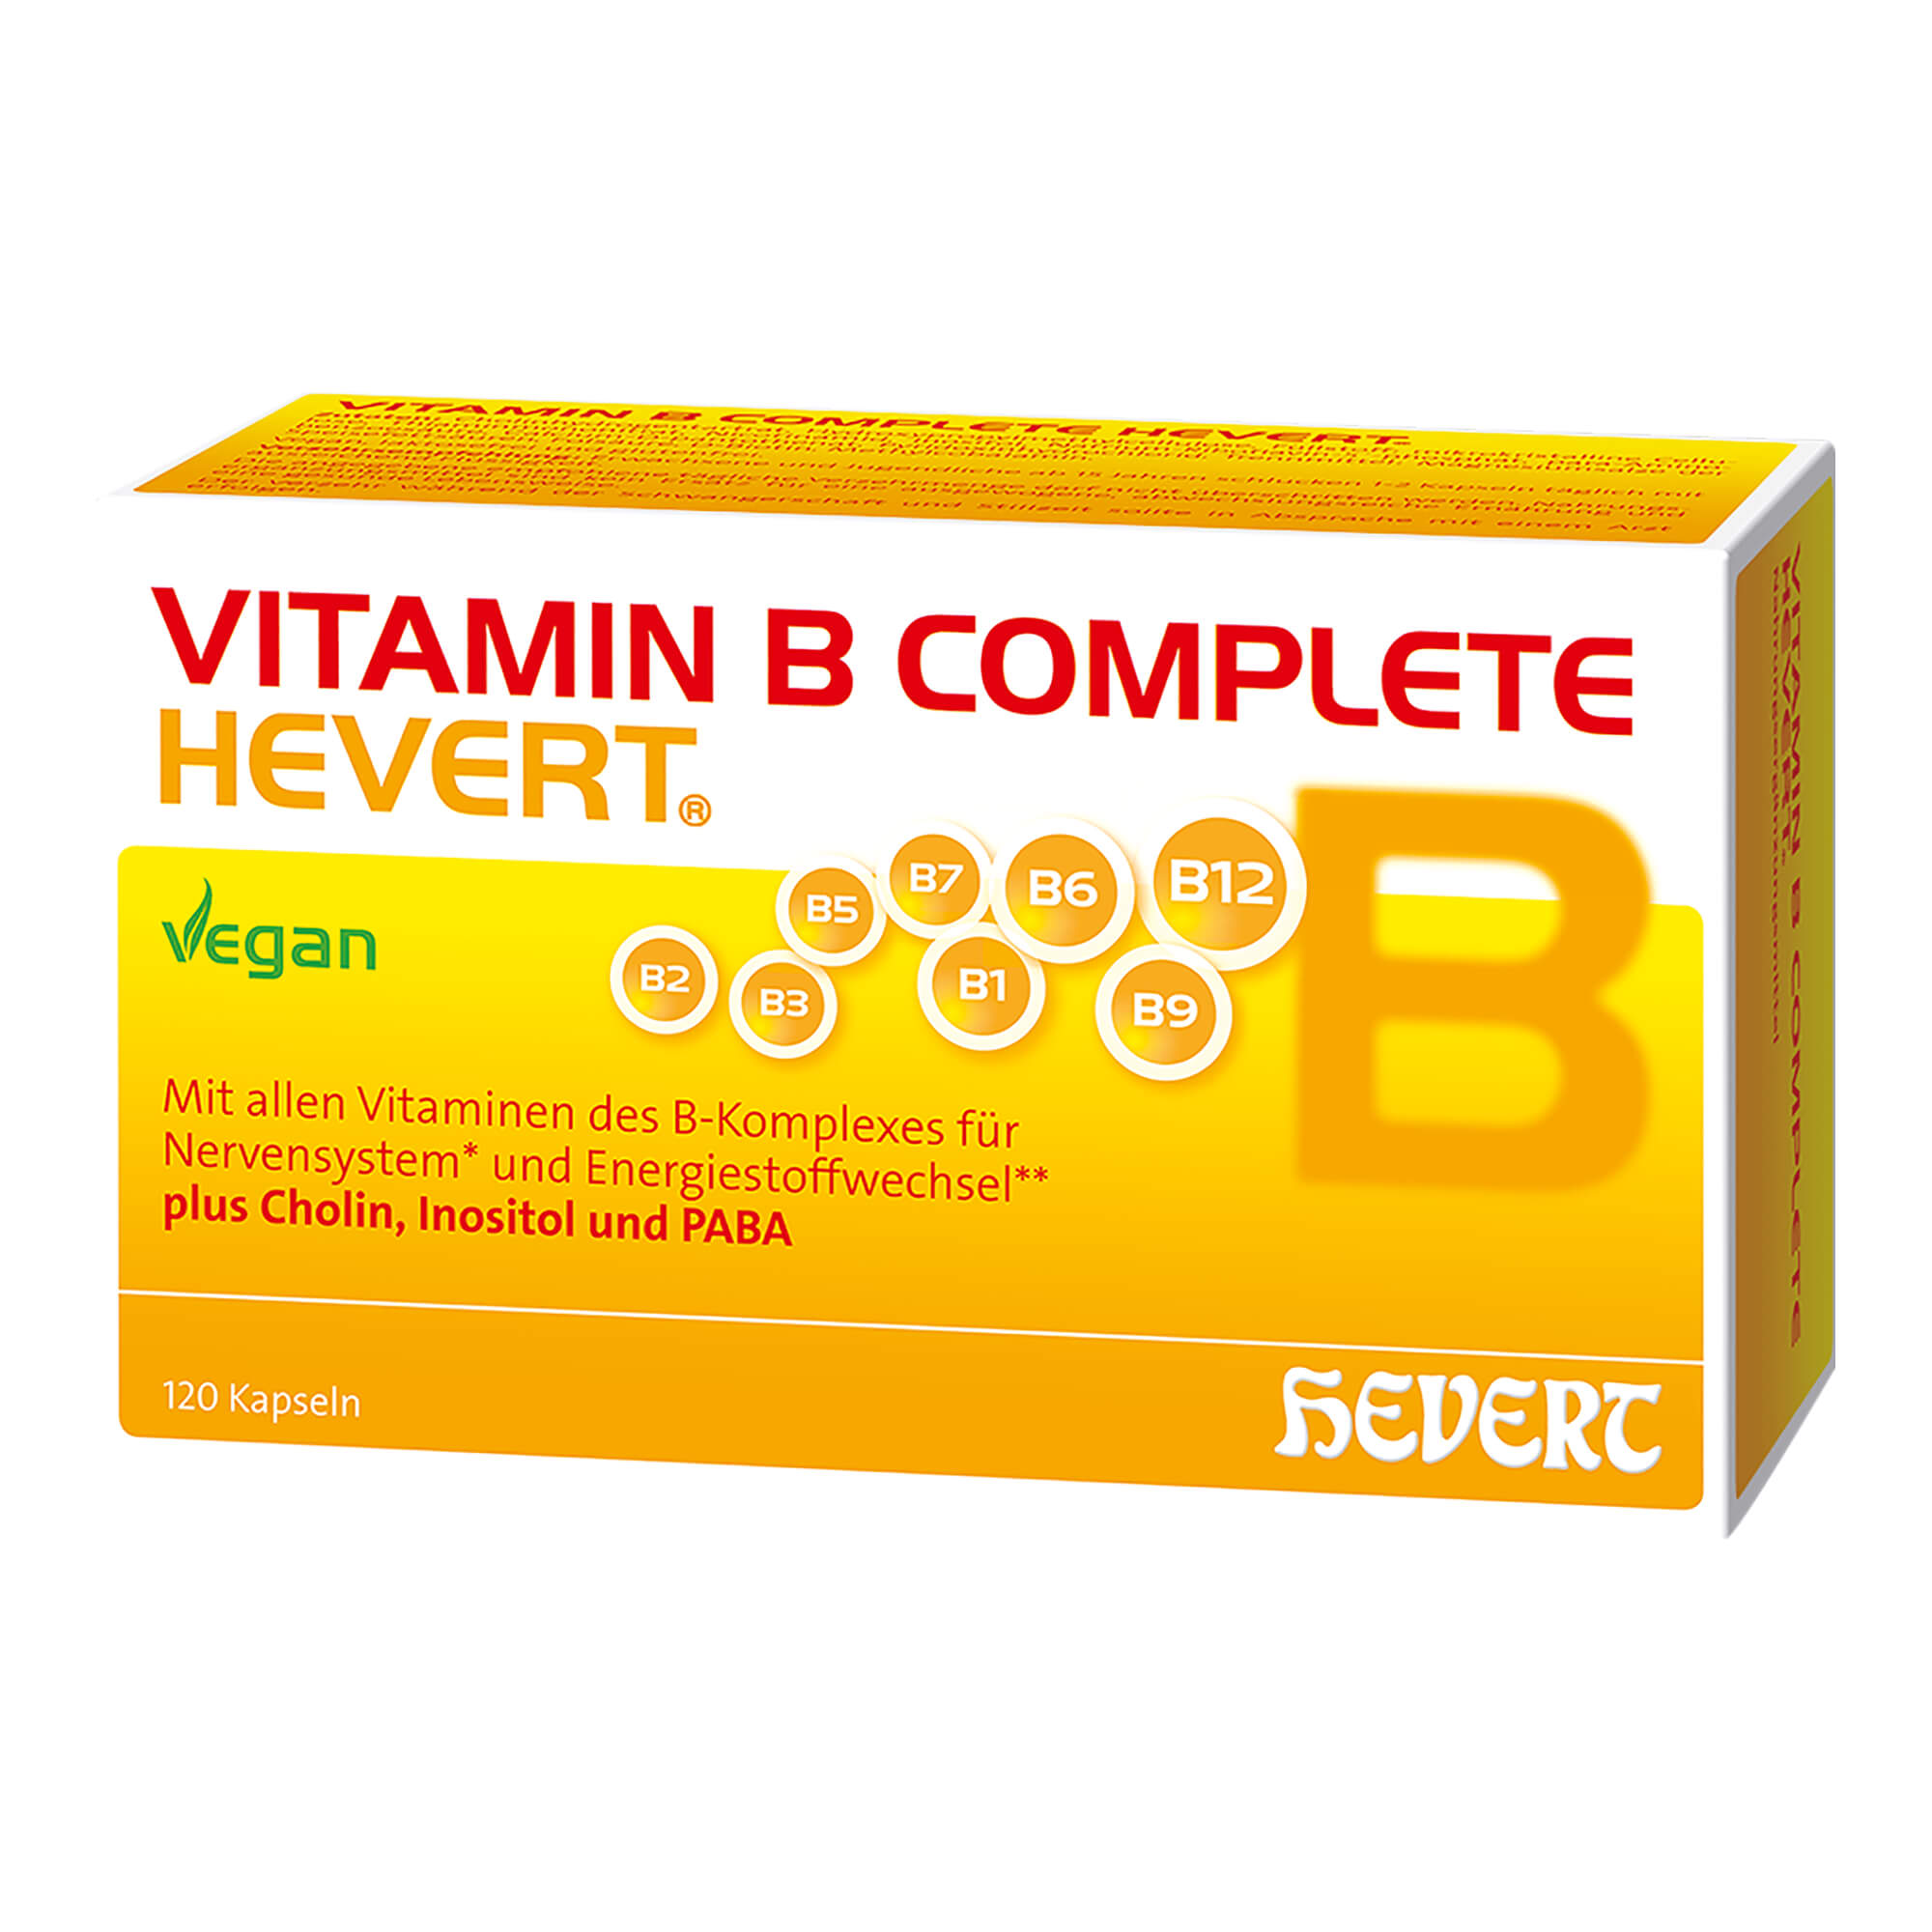 Nahrungsergänzungsmittel mit allen Vitaminen des B-Komplexes.